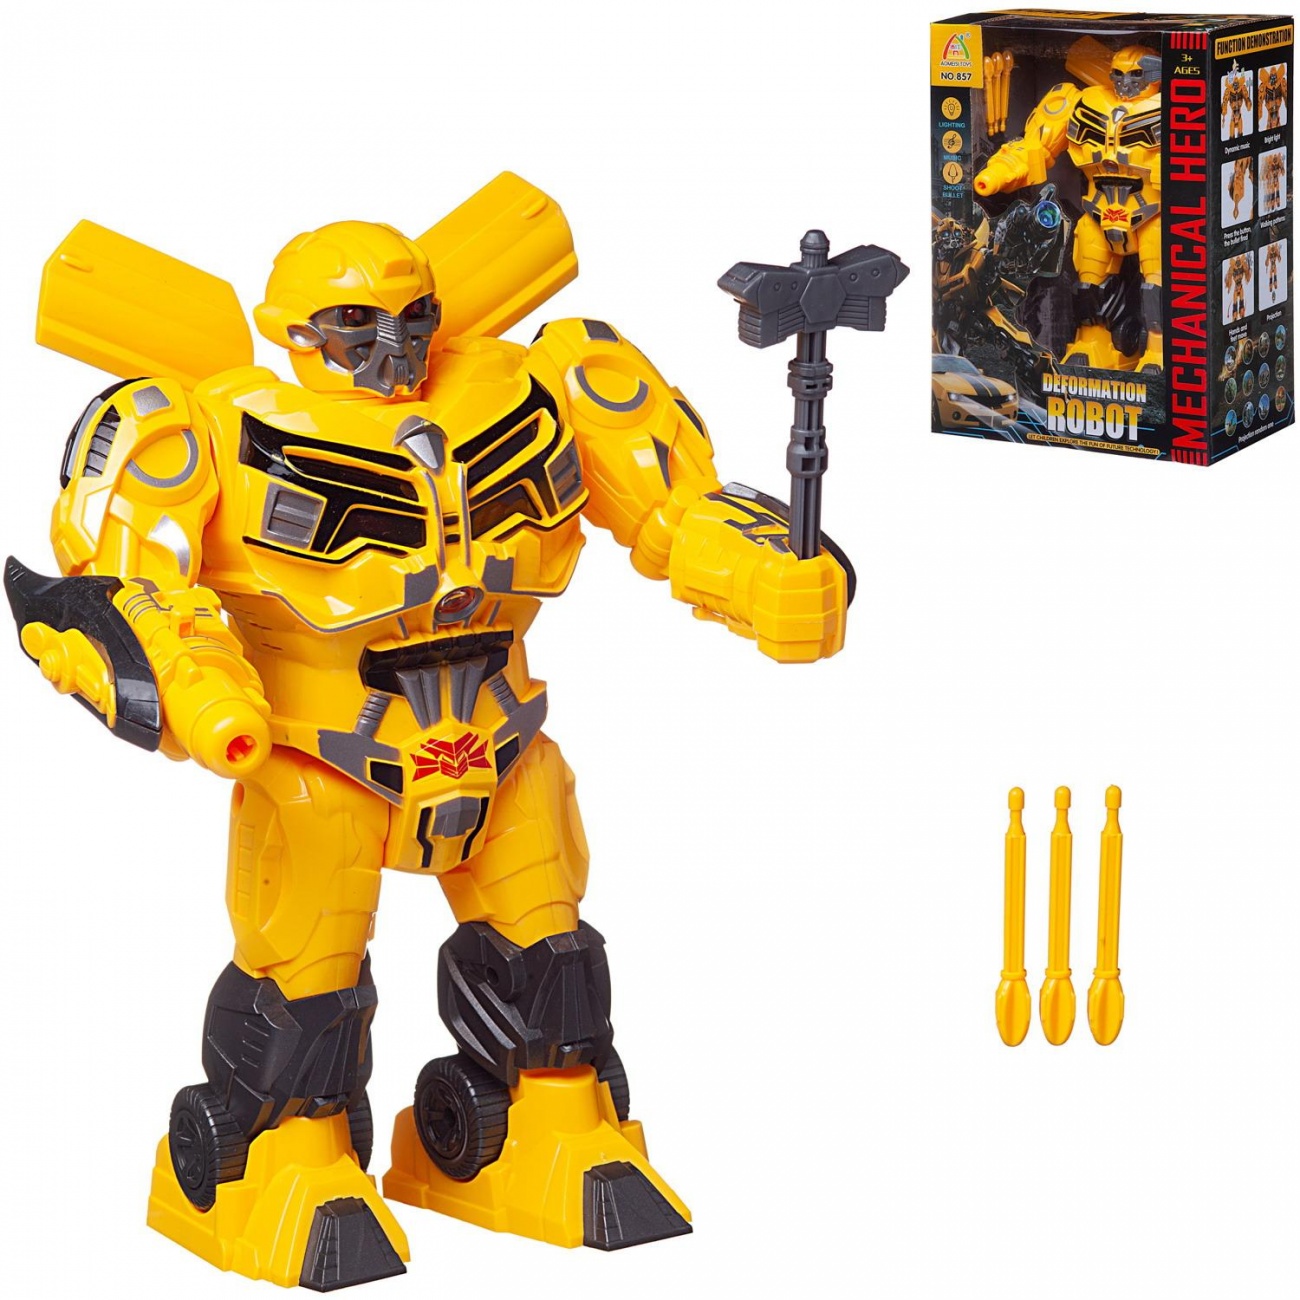 Робот Junfa Deformation Robot, желтый, движение, свет/звук WB-02420